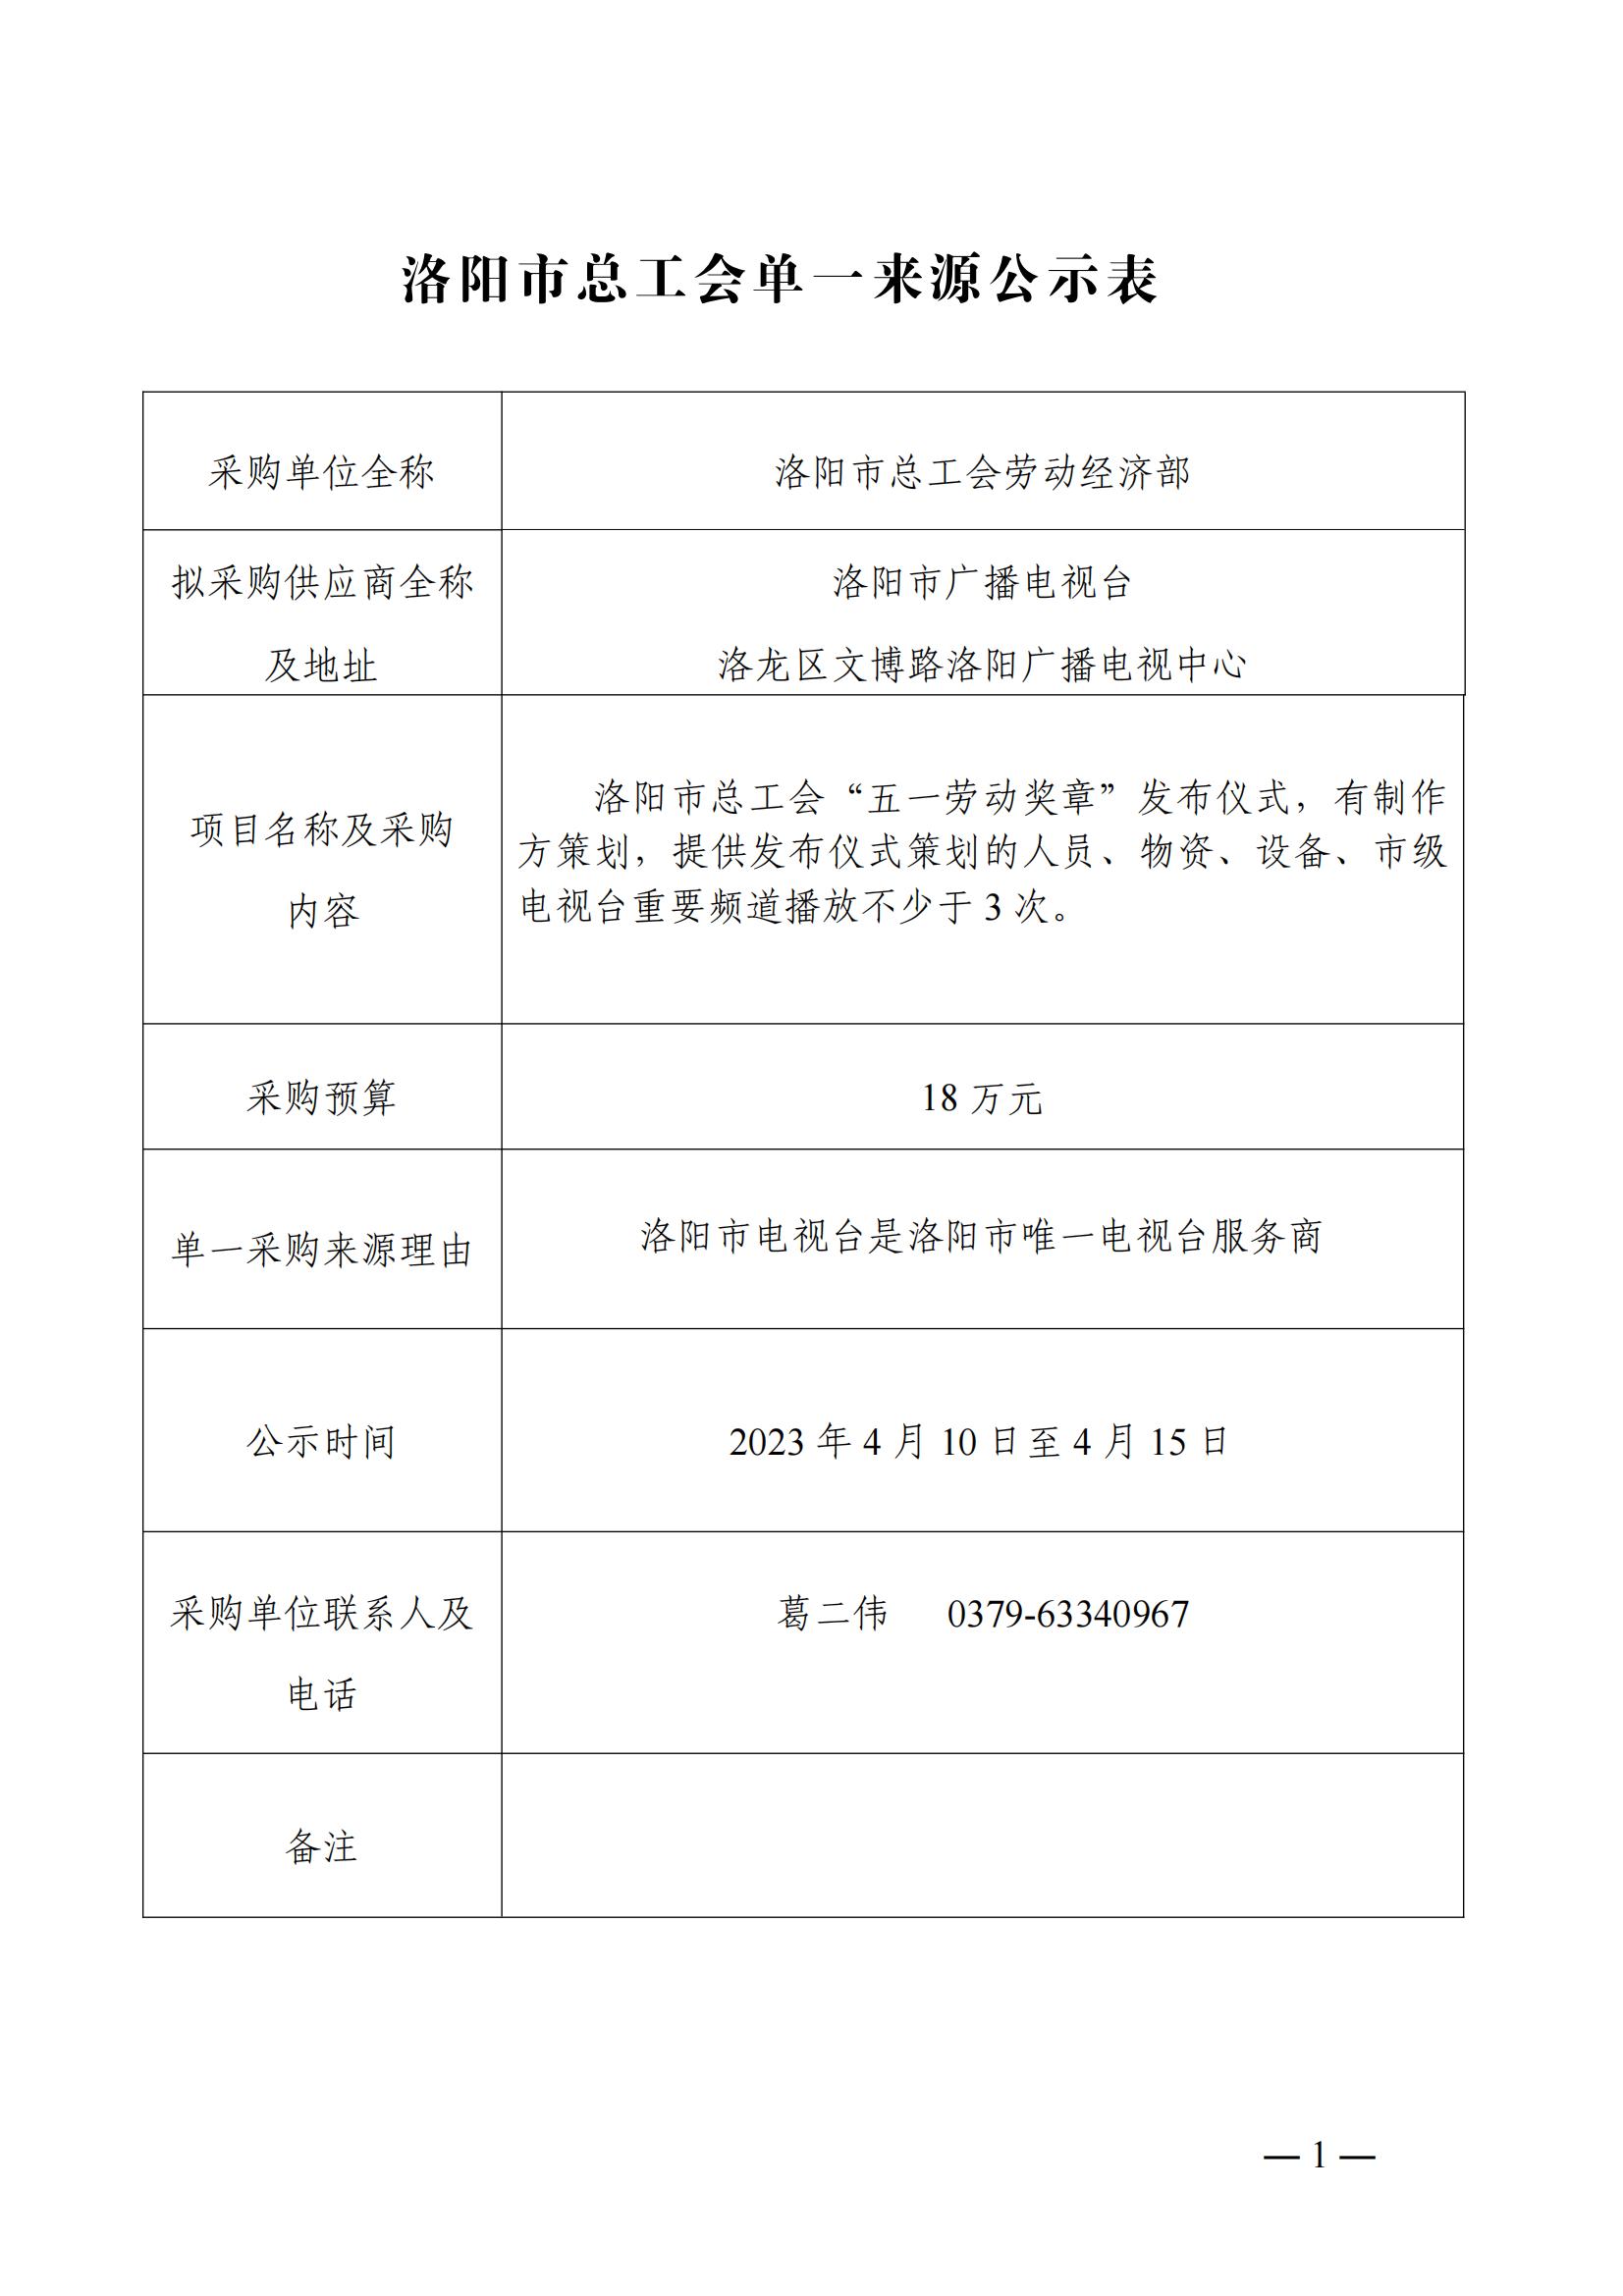 2022年度洛阳市五一劳动奖章发布仪式单一来源采购公示表_00.jpg